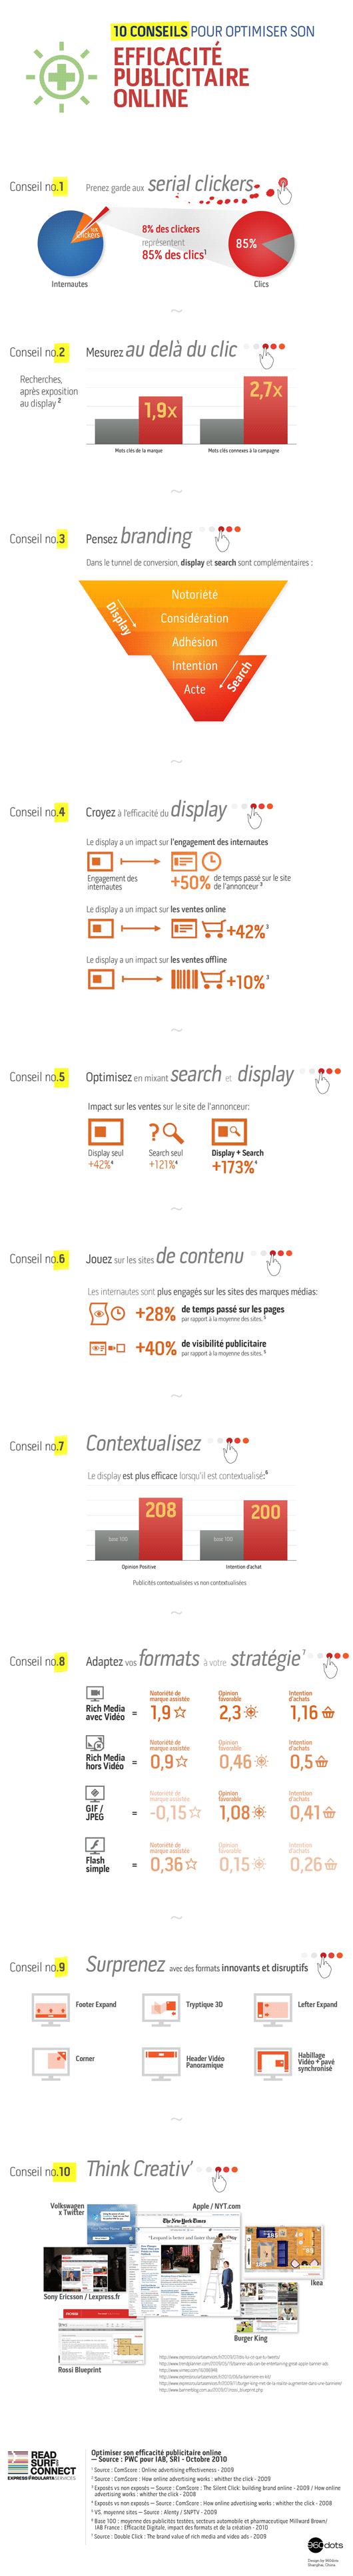 L’efficacité de la publicité online : infographie